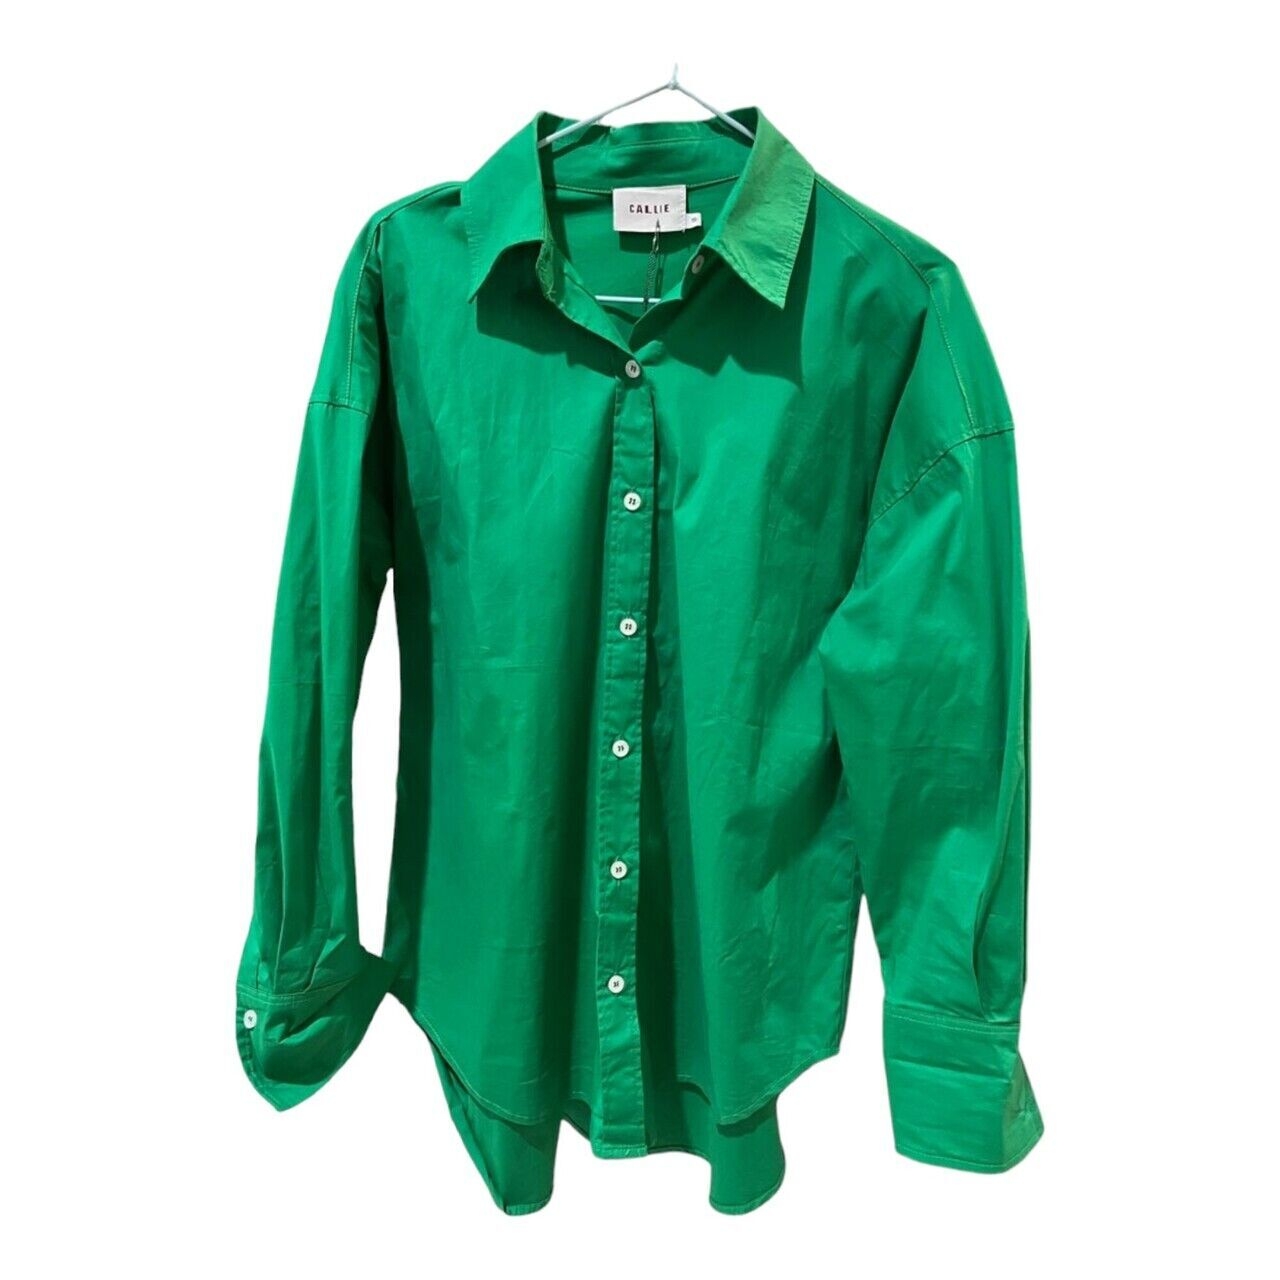 Callie Cotton Green Shirt